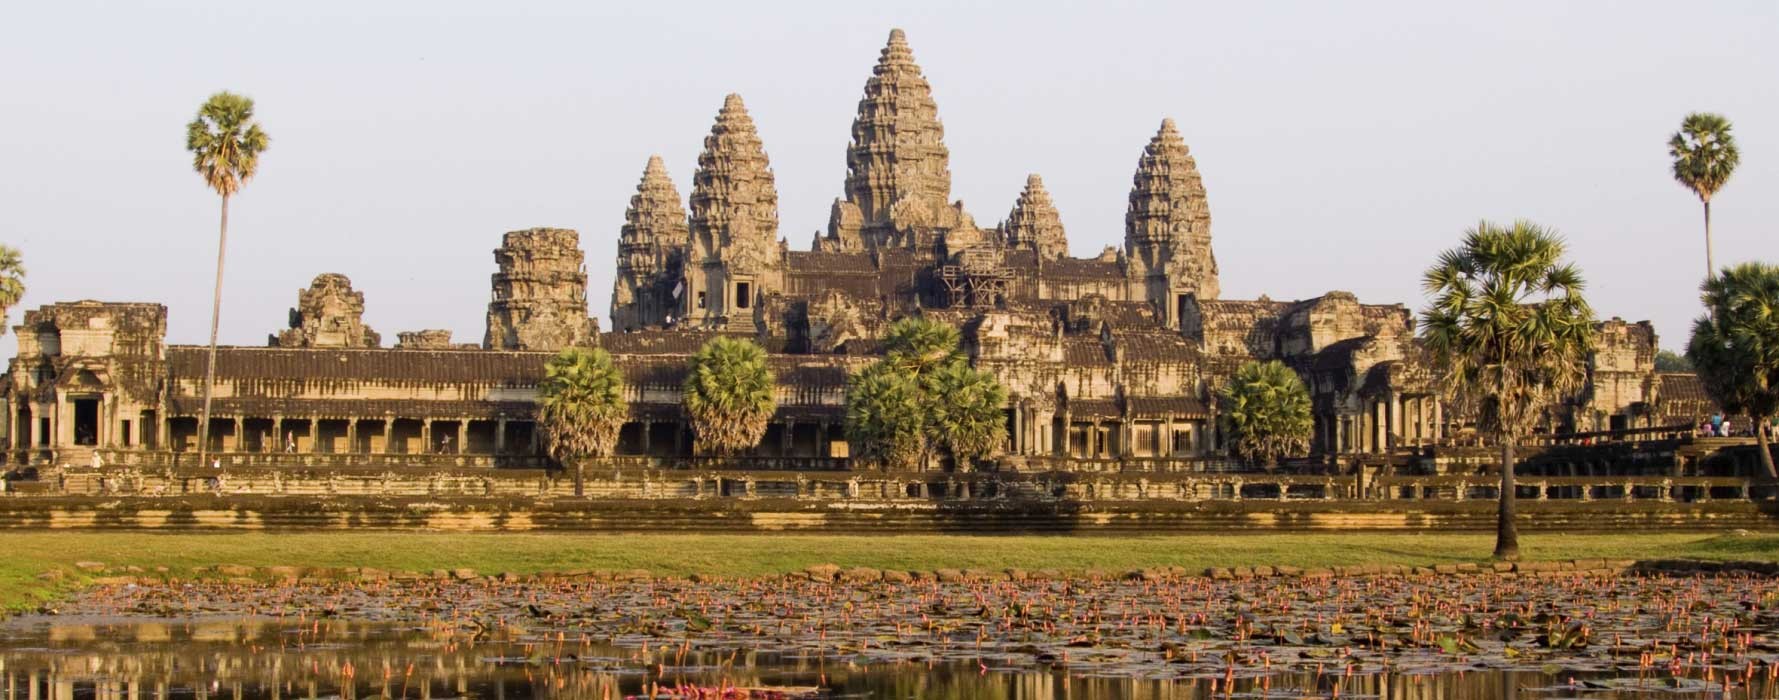 ប្រាសាទអង្គរវត្ត (Angkor Wat Temple)